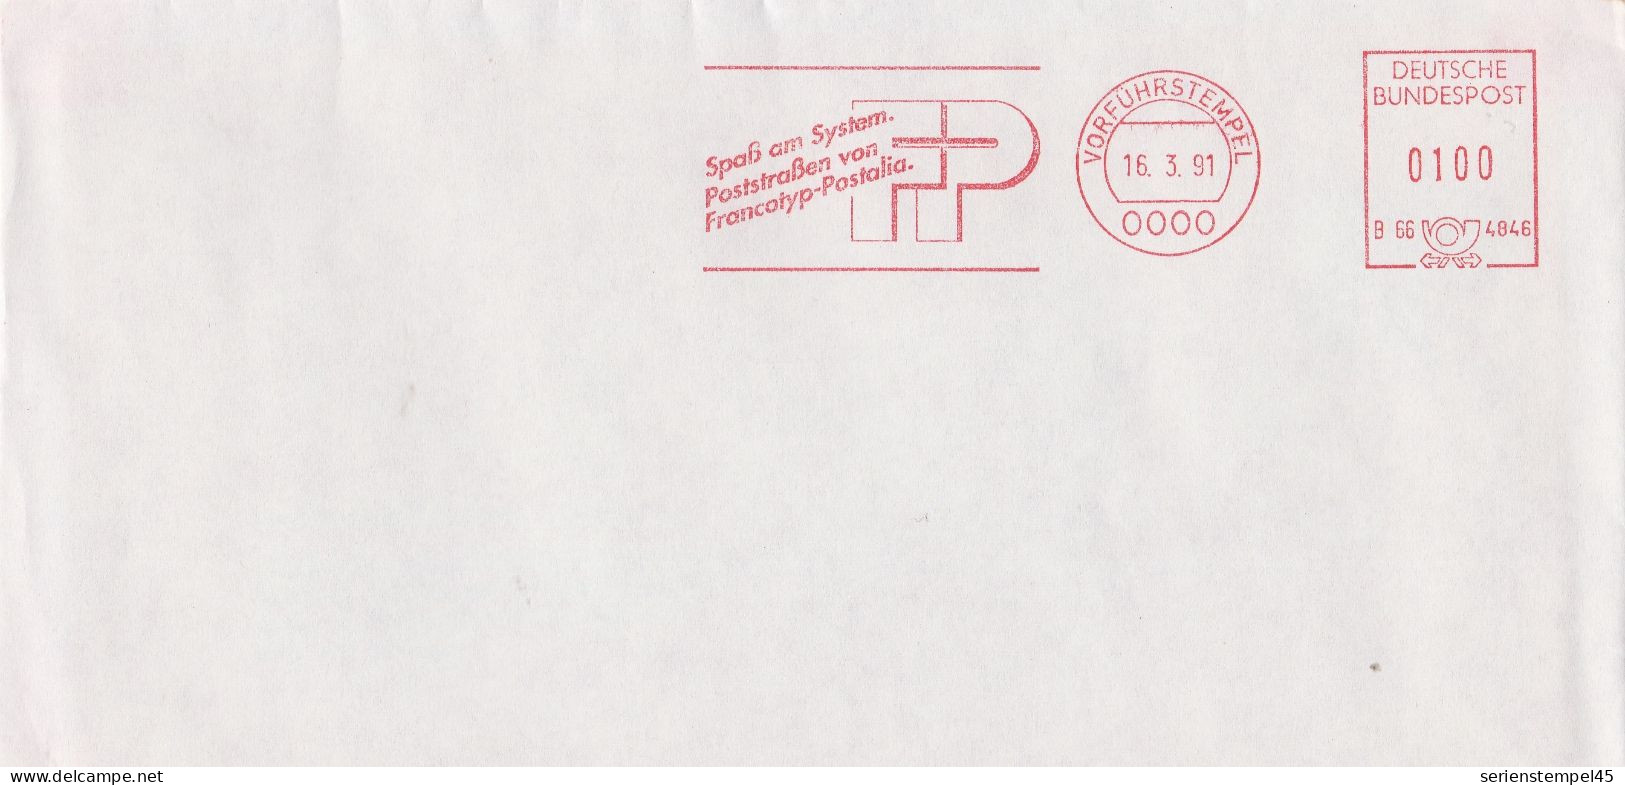 Bund Brief Mit Freistempel Rot Vorführstempel 1991 Francotyp Postalia B66 4846 - Maschinenstempel (EMA)